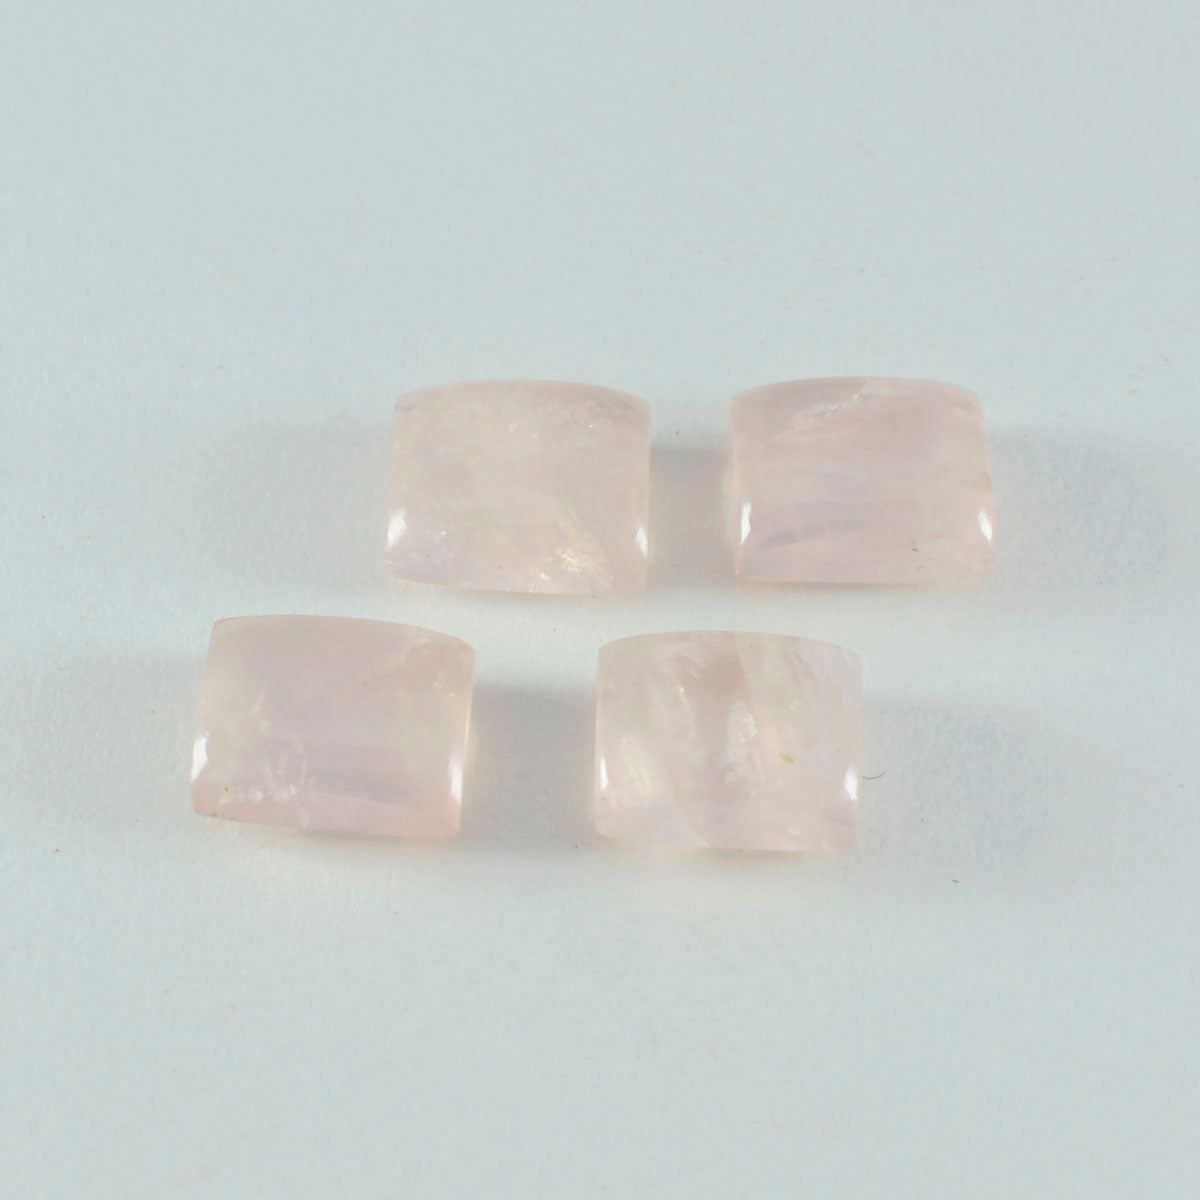 riyogems 1pc cabochon di quarzo rosa rosa 10x14 mm forma ottagonale pietra preziosa di qualità sorprendente